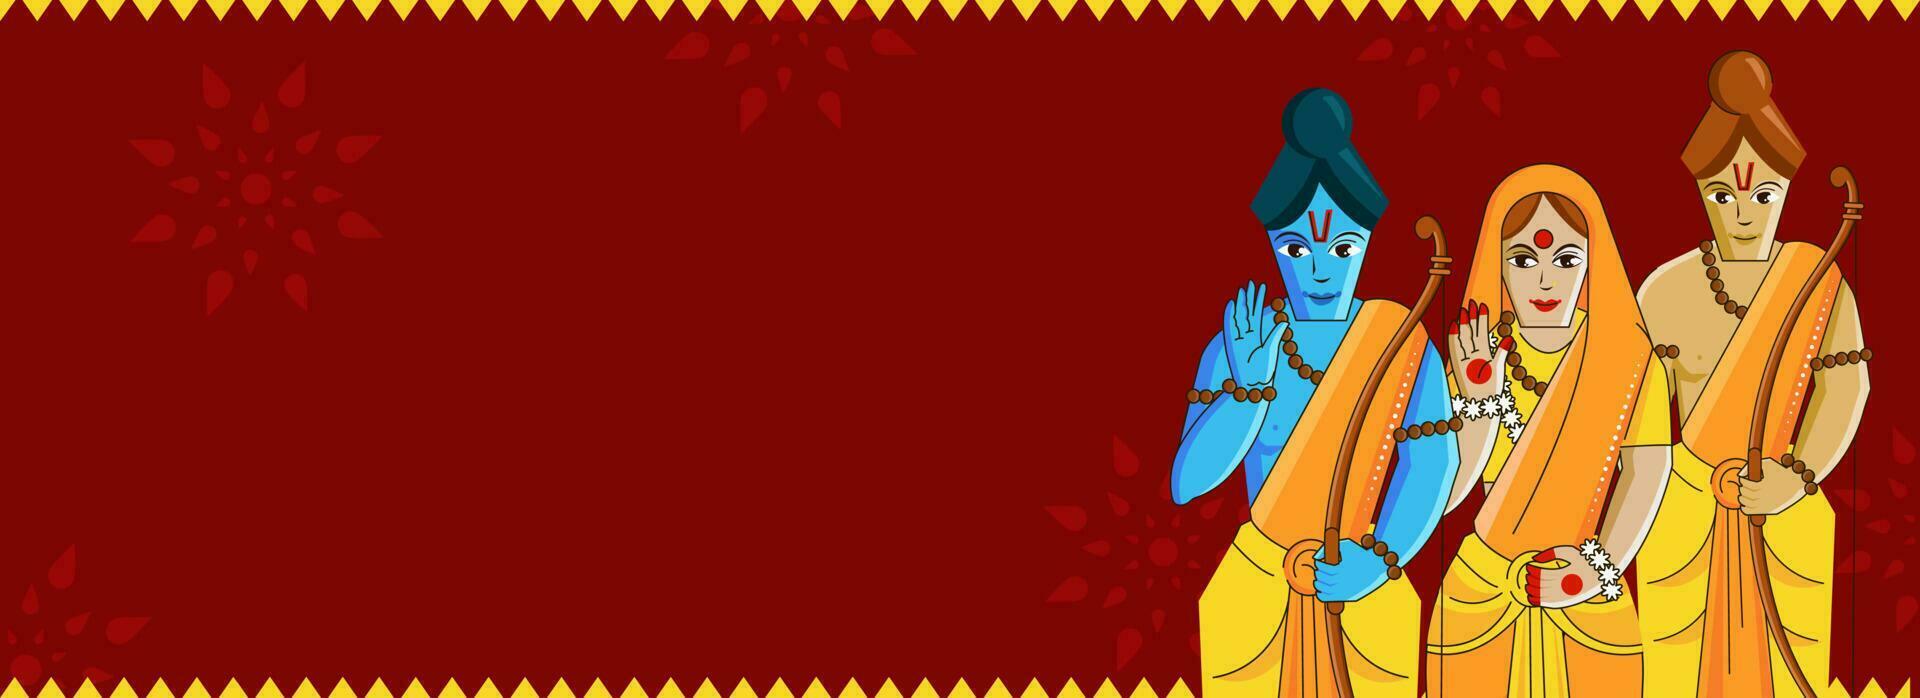 hindu mitologia senhor rama com dele esposa, irmão lakshman personagem e cópia de espaço em vermelho fundo. vetor